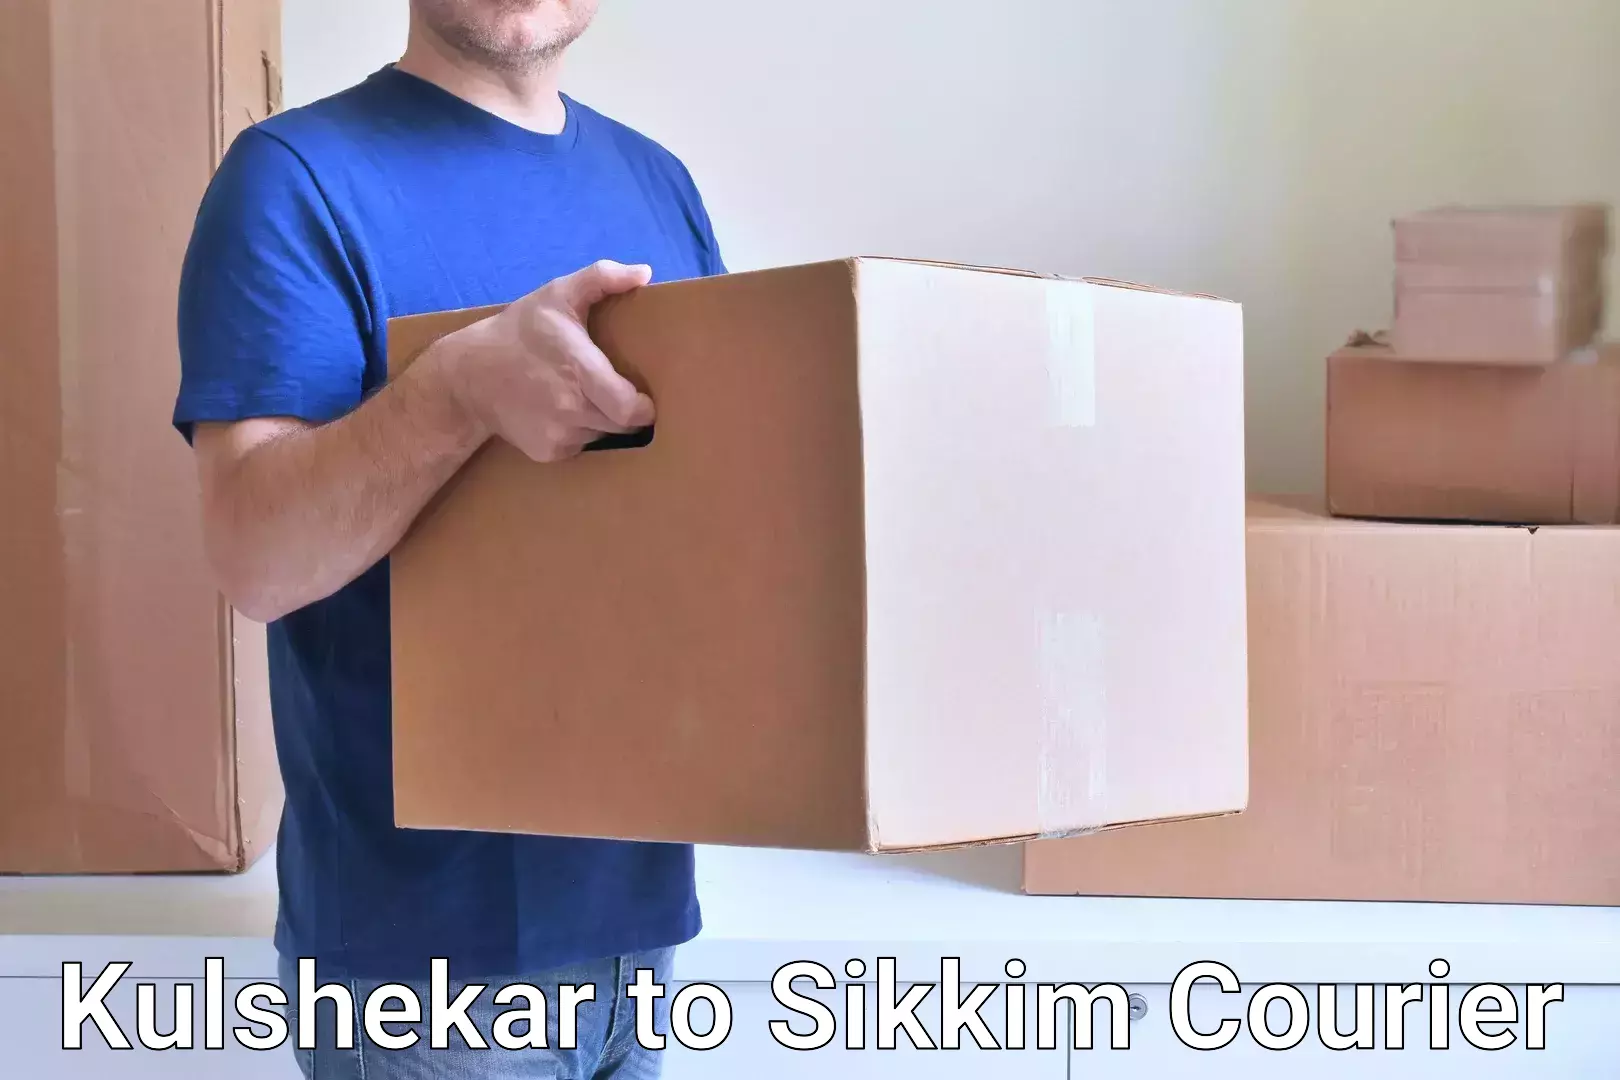 Bulk shipping discounts Kulshekar to North Sikkim